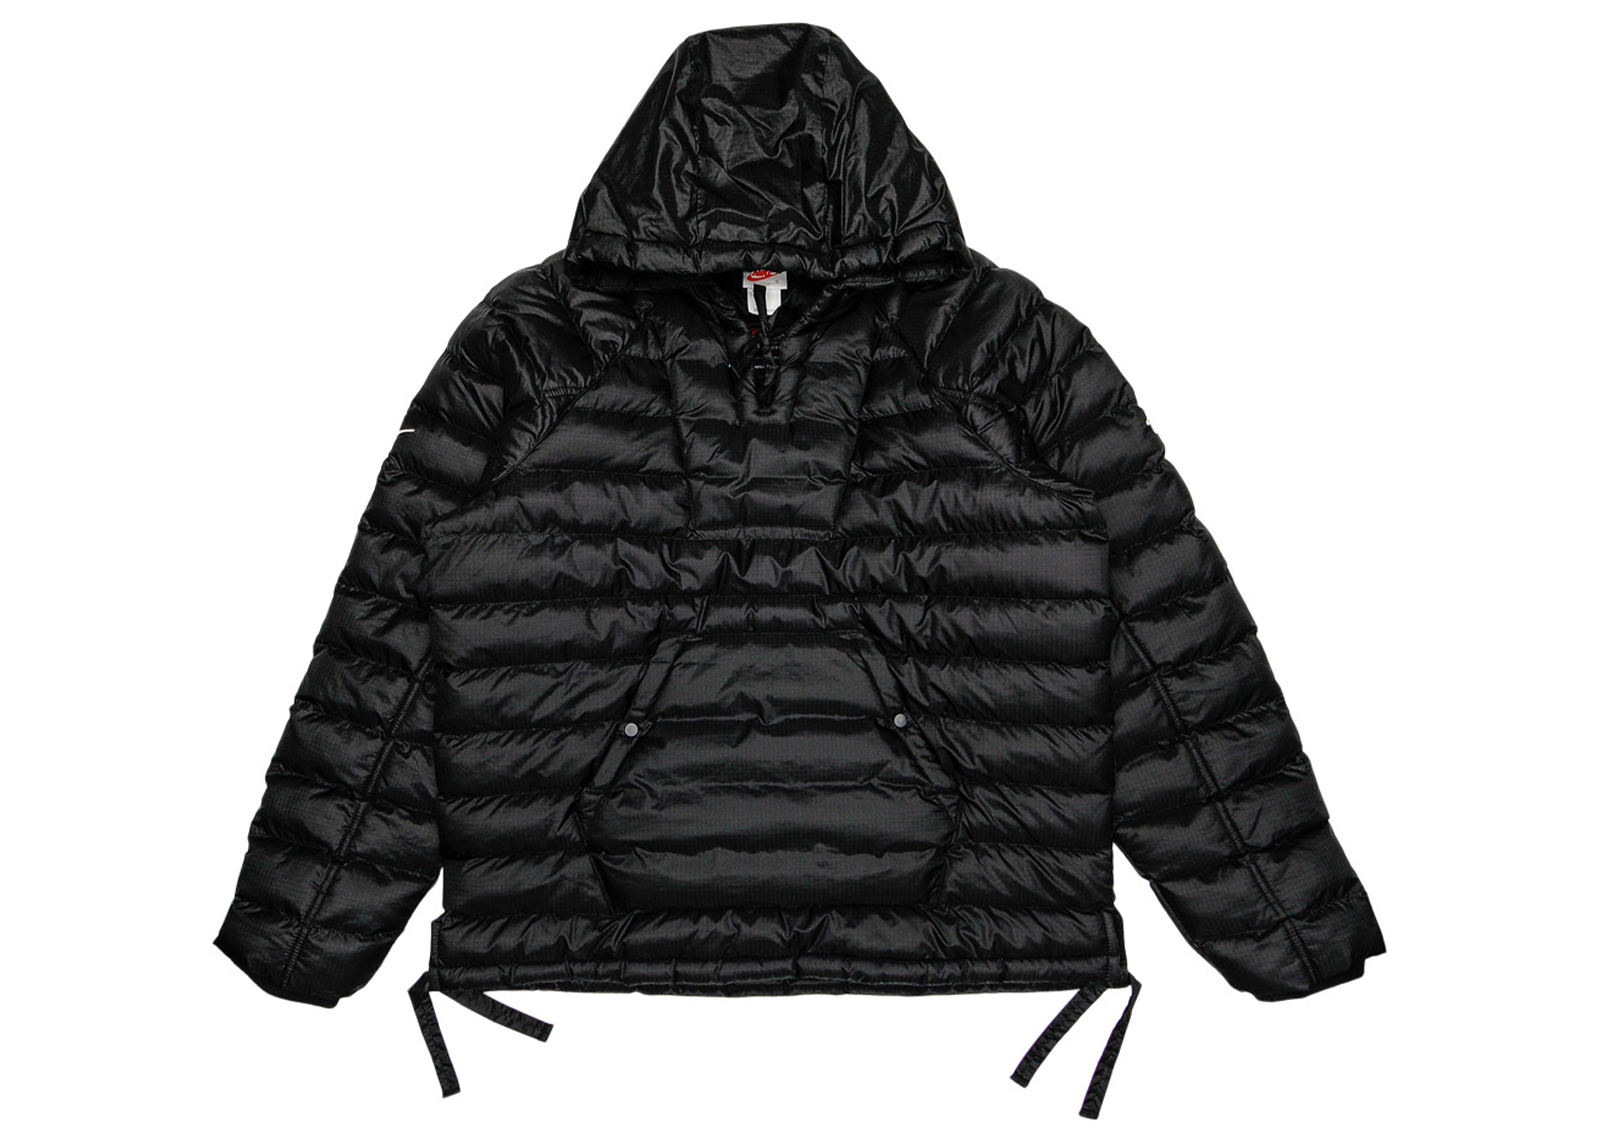 Nike x Stussy Insulated Jacket Black